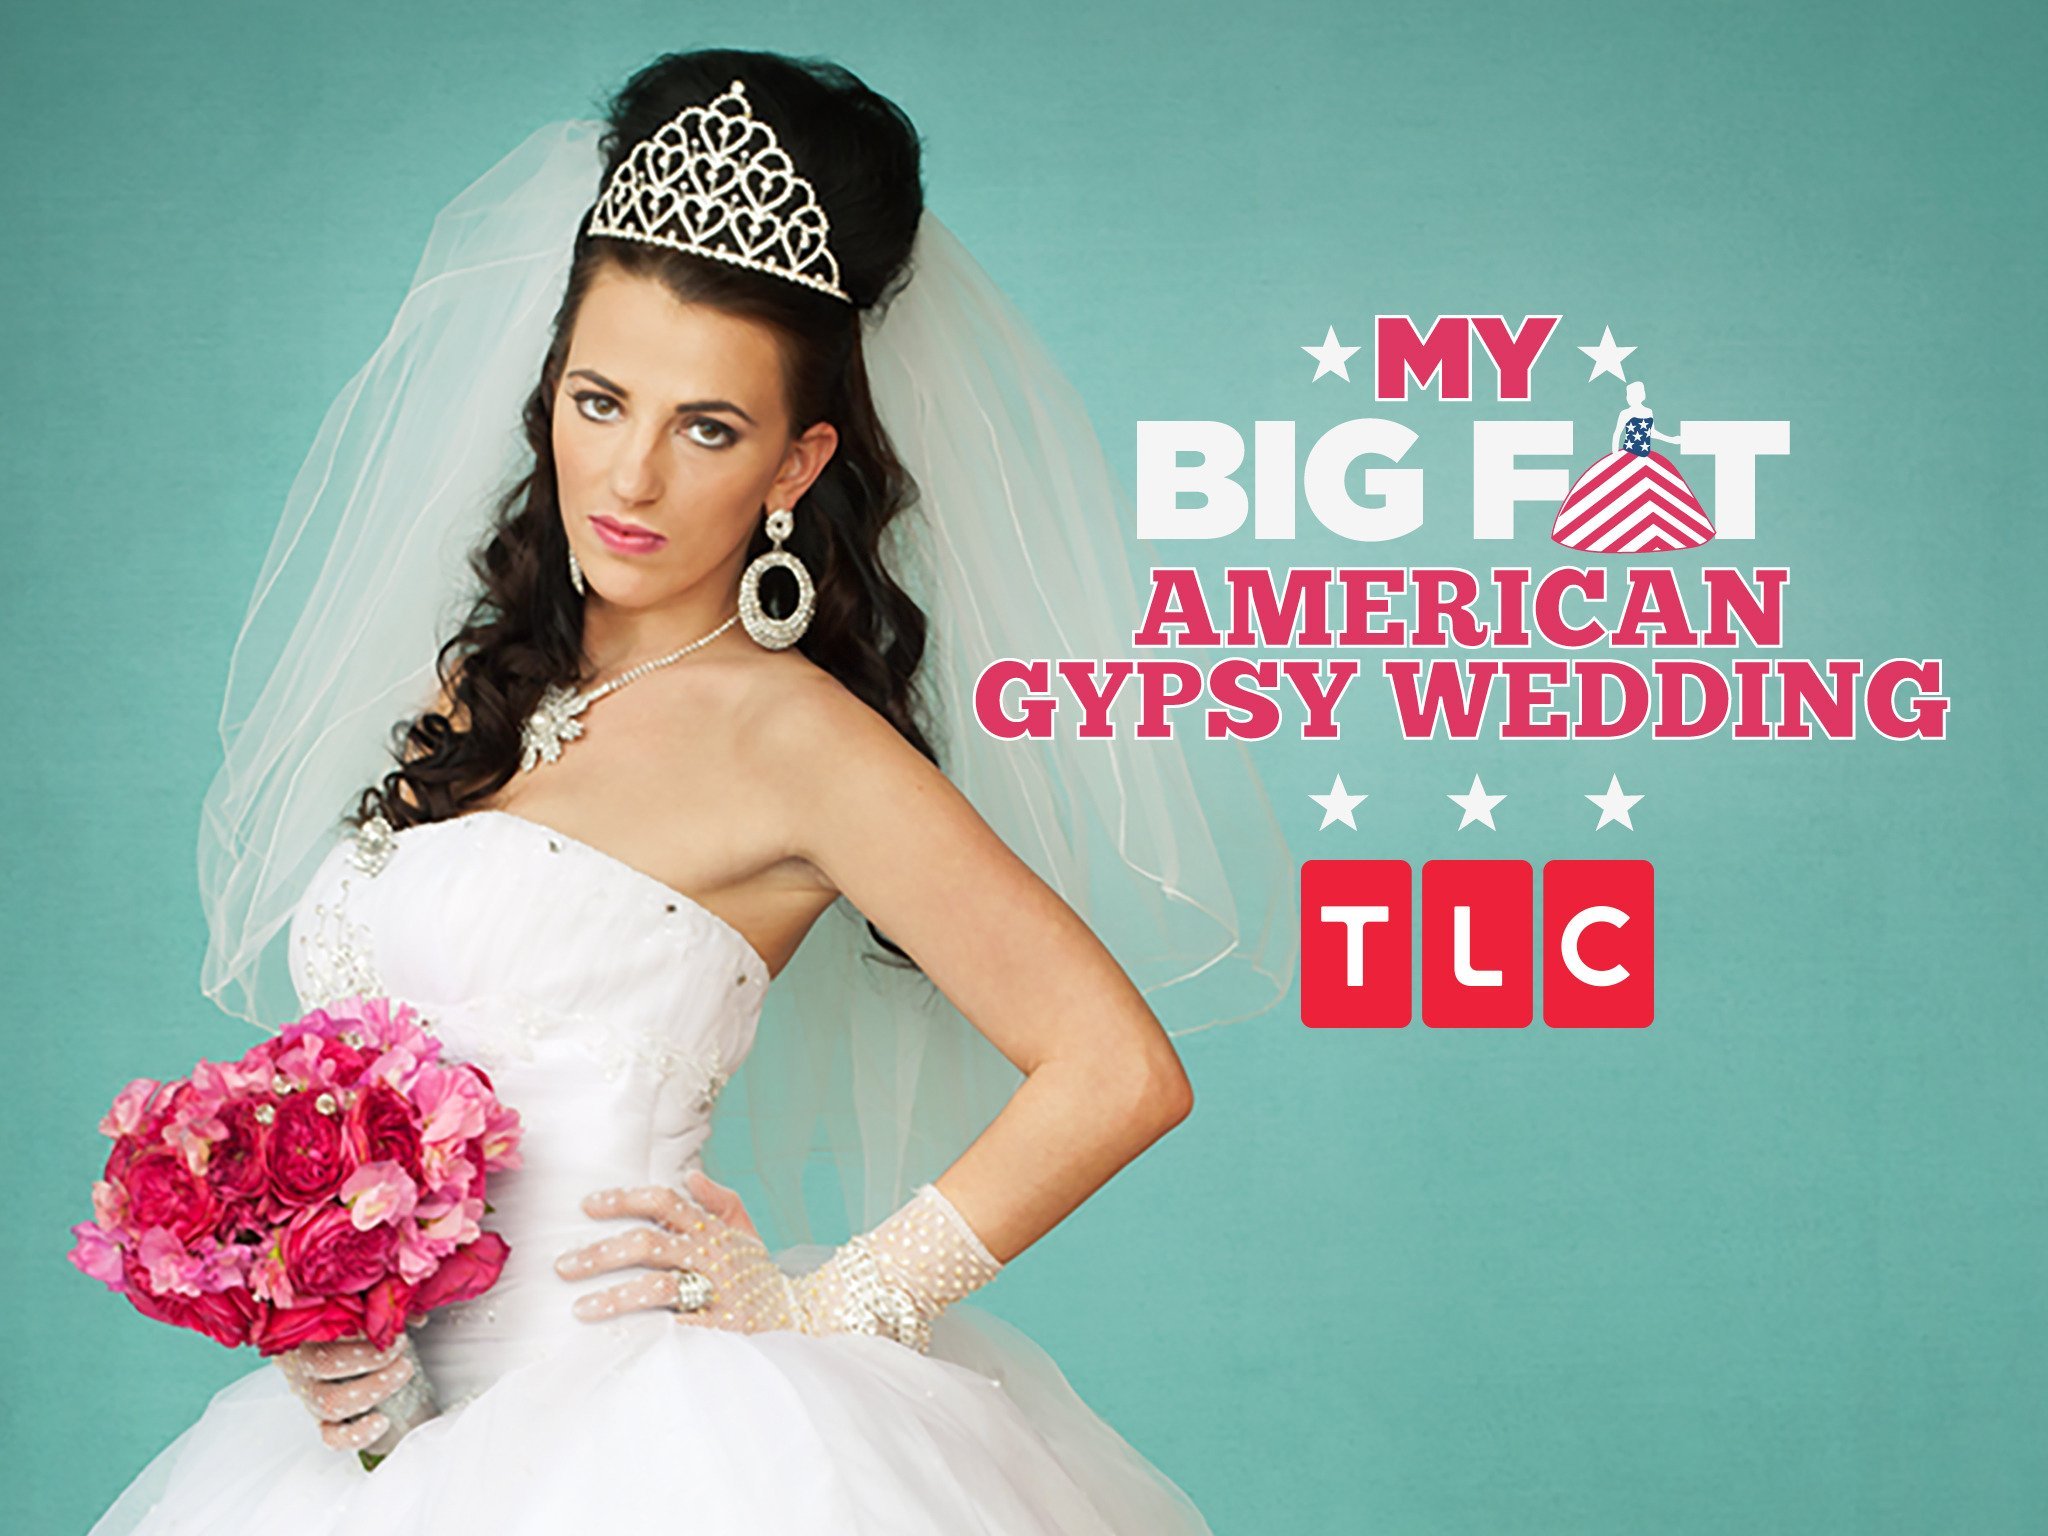 My big fat american gypsy wedding episodes online free, MISHKANET.COM